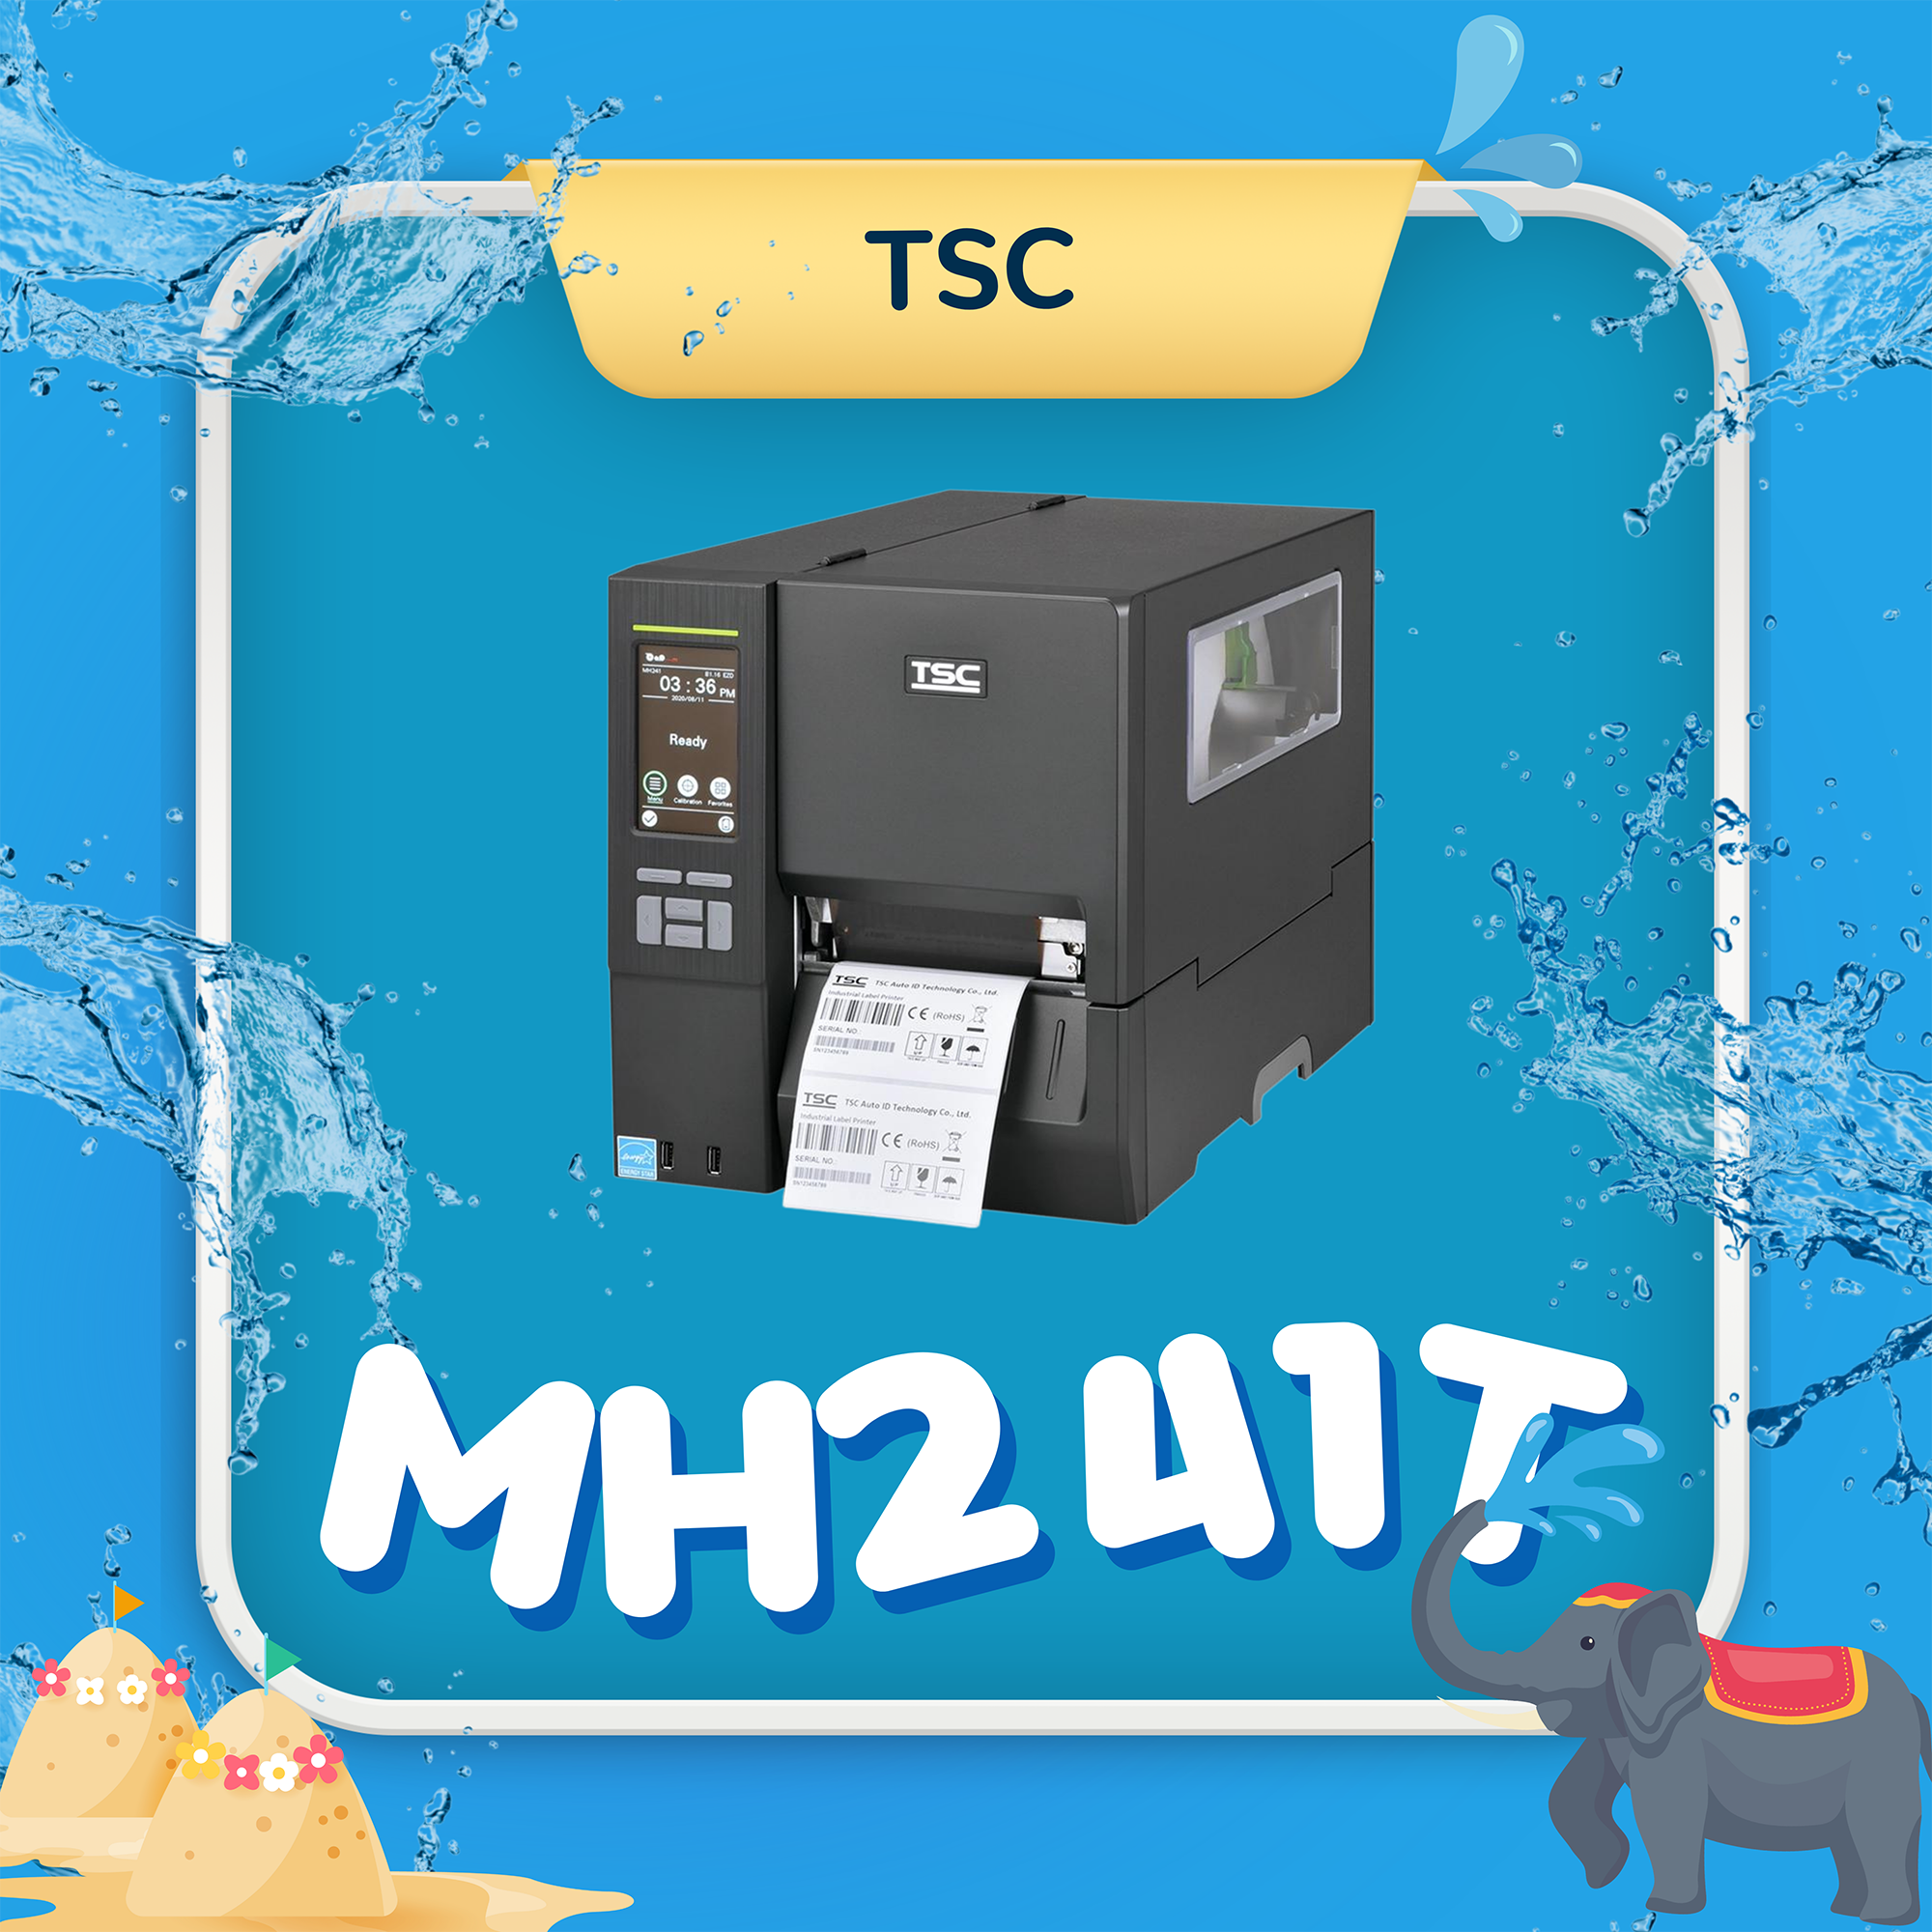 เครื่องพิมพ์บาร์โค้ด TSC MH241T Advance Printer Barcod